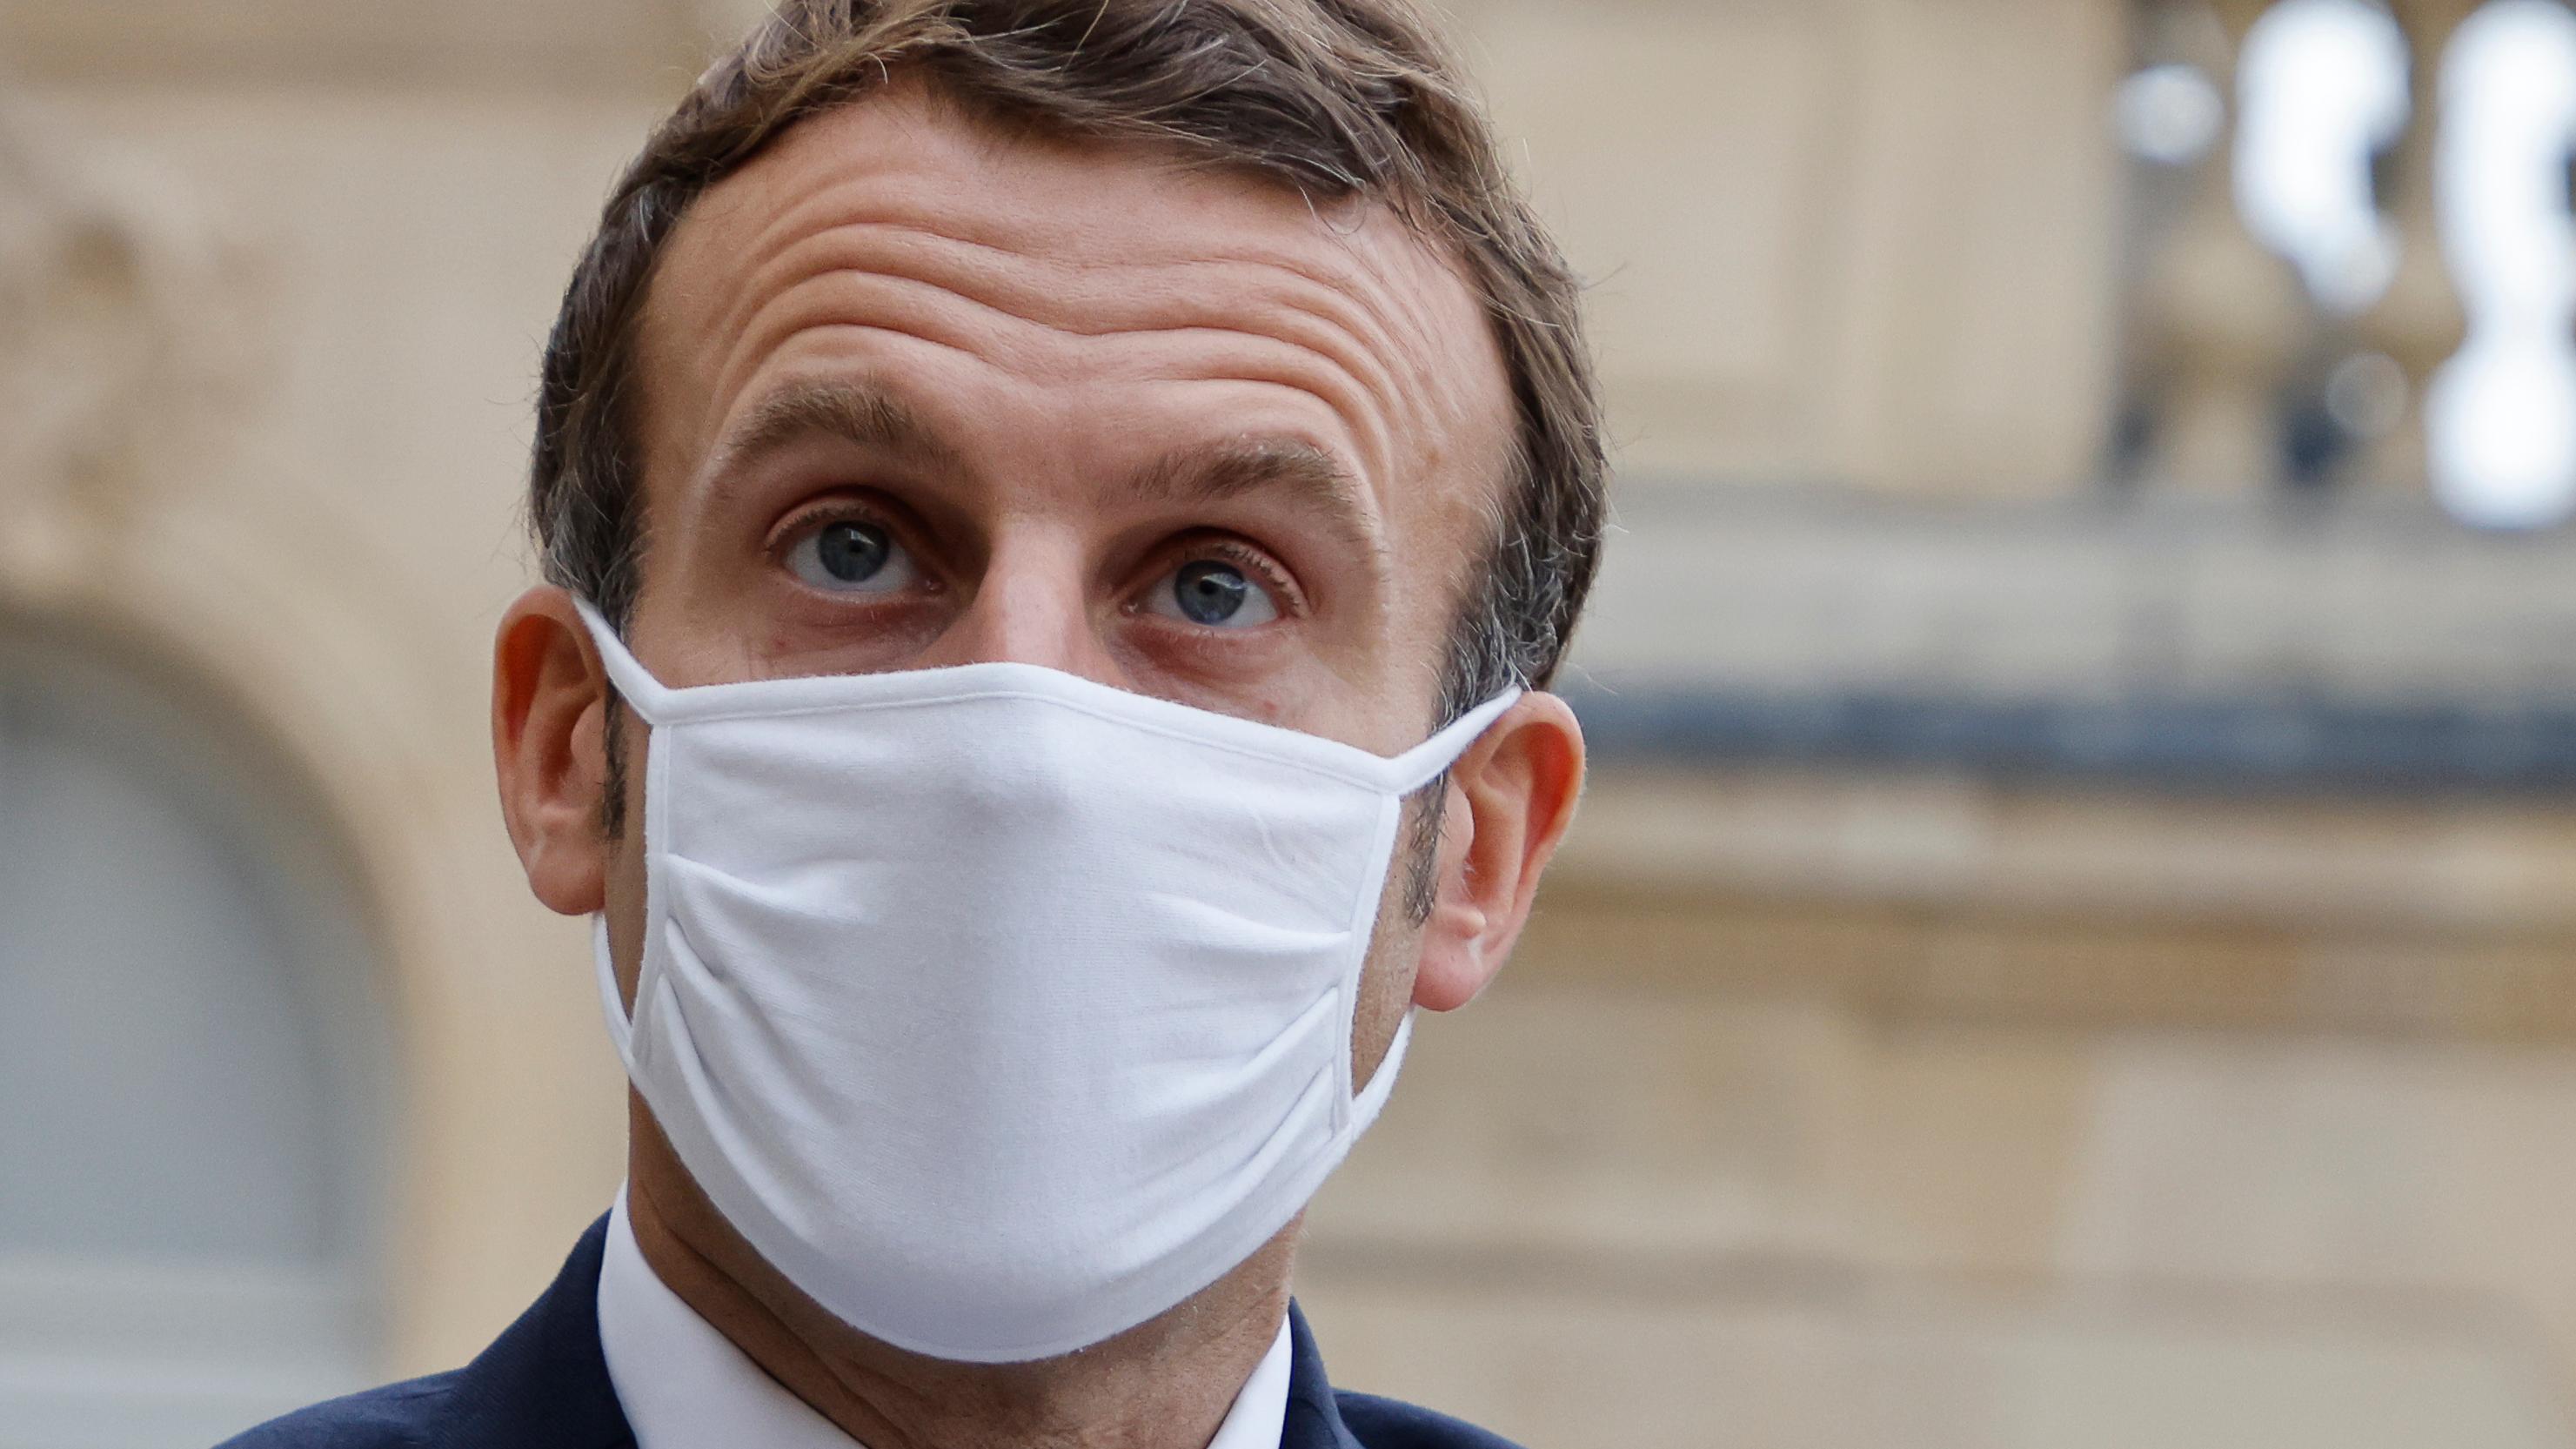 Presidente da França, Emmanuel Macron, anunciou ontem uma nova quarentena nacional devido à disparada dos casos de Covid-19